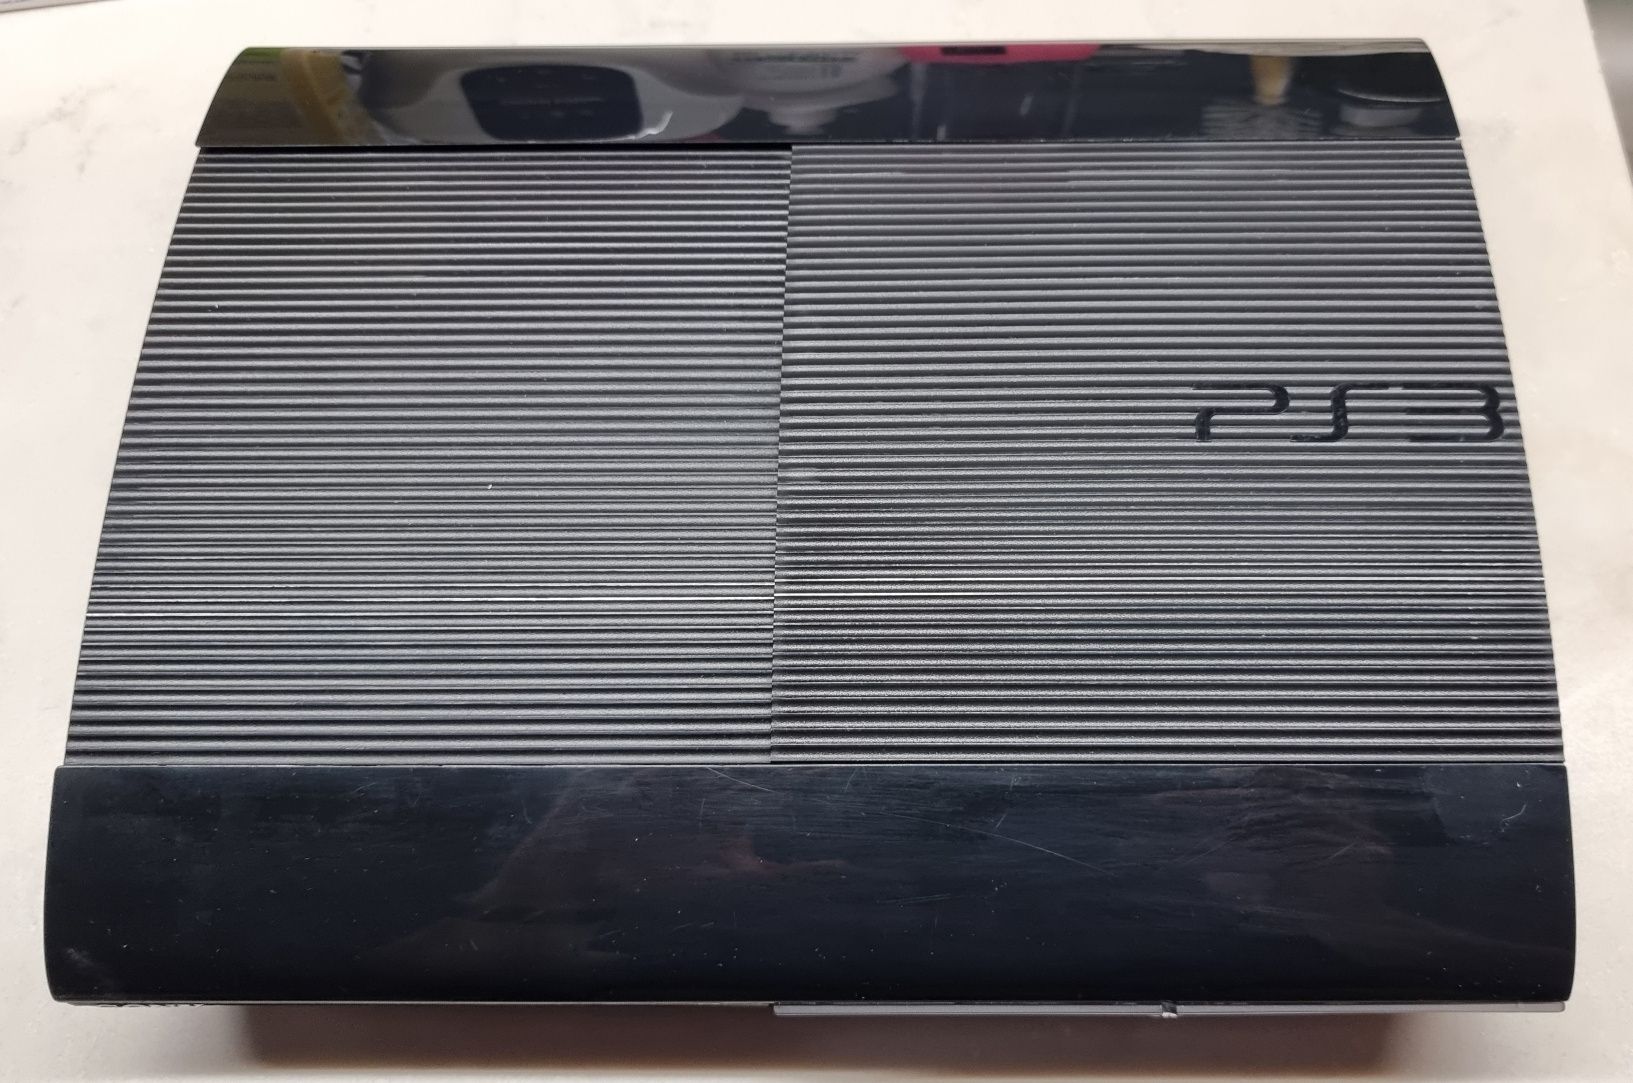 PlayStation 3 duży zestaw z grami i padami sprzedam/zamienię